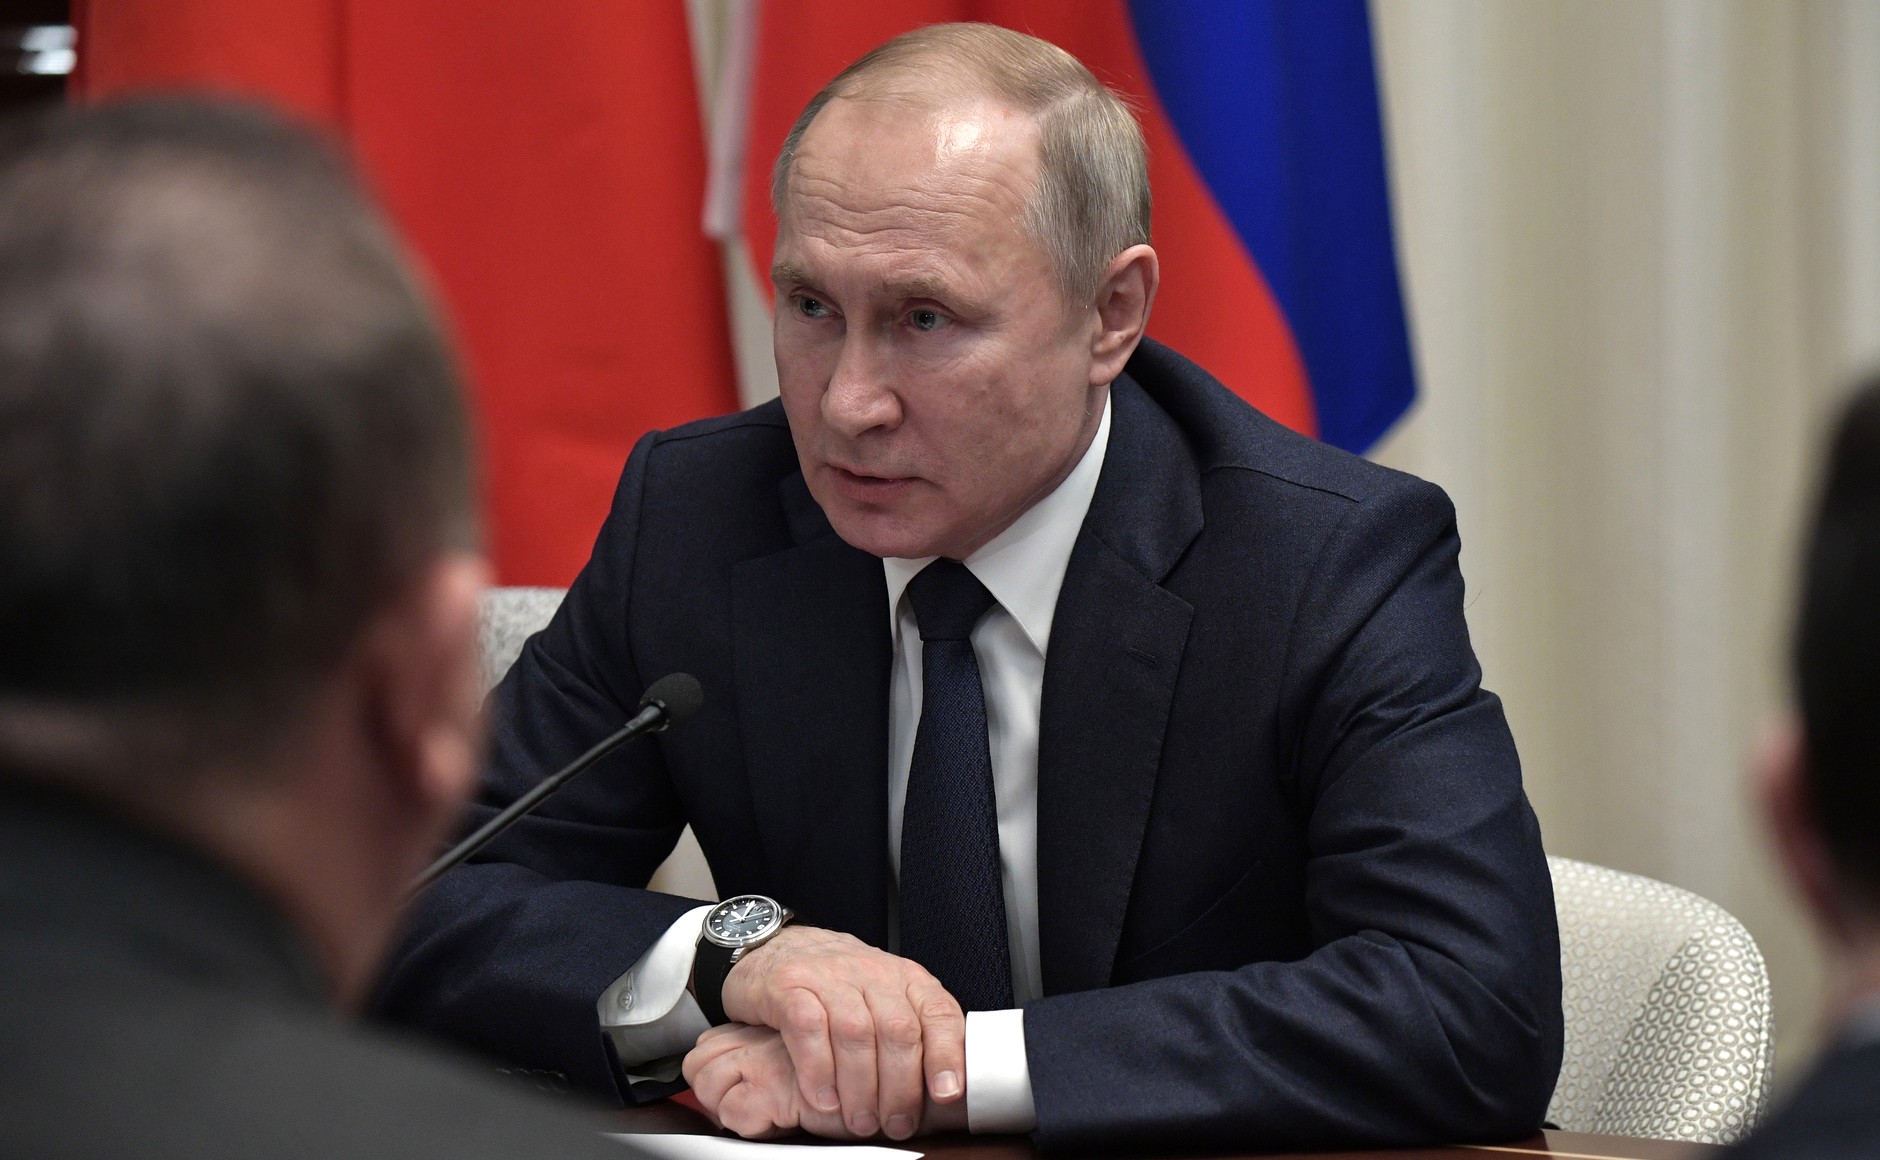 Путин заявил, что российско-турецкие отношения развиваются несмотря ни на что